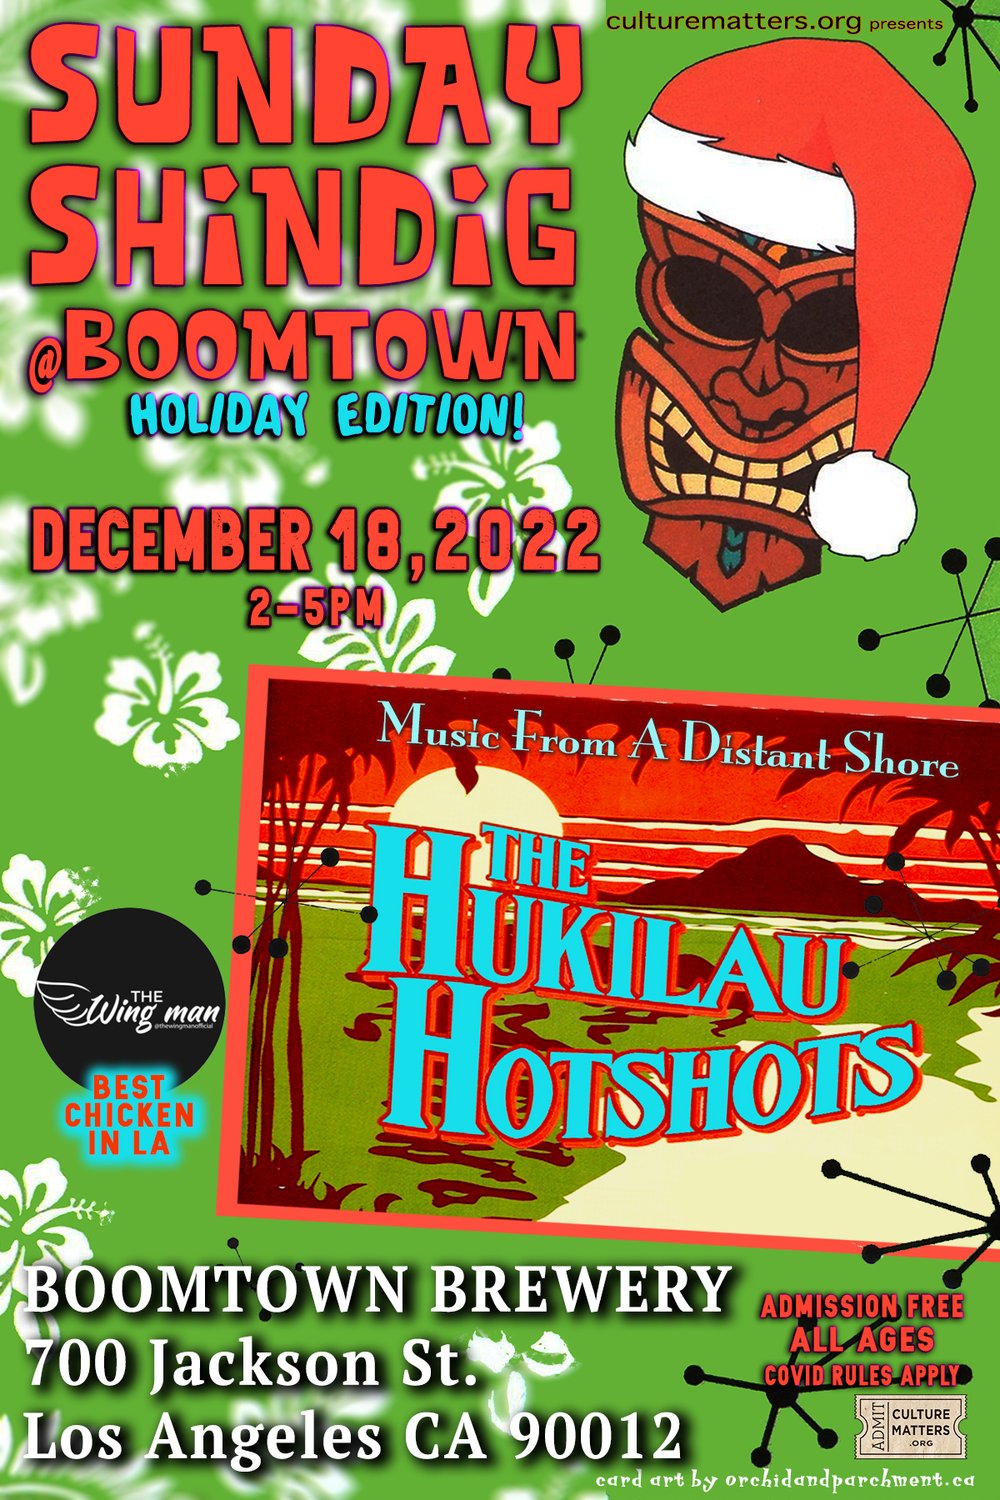 Dave Stuckey’s Hukilau Hotshots at Boomtown!